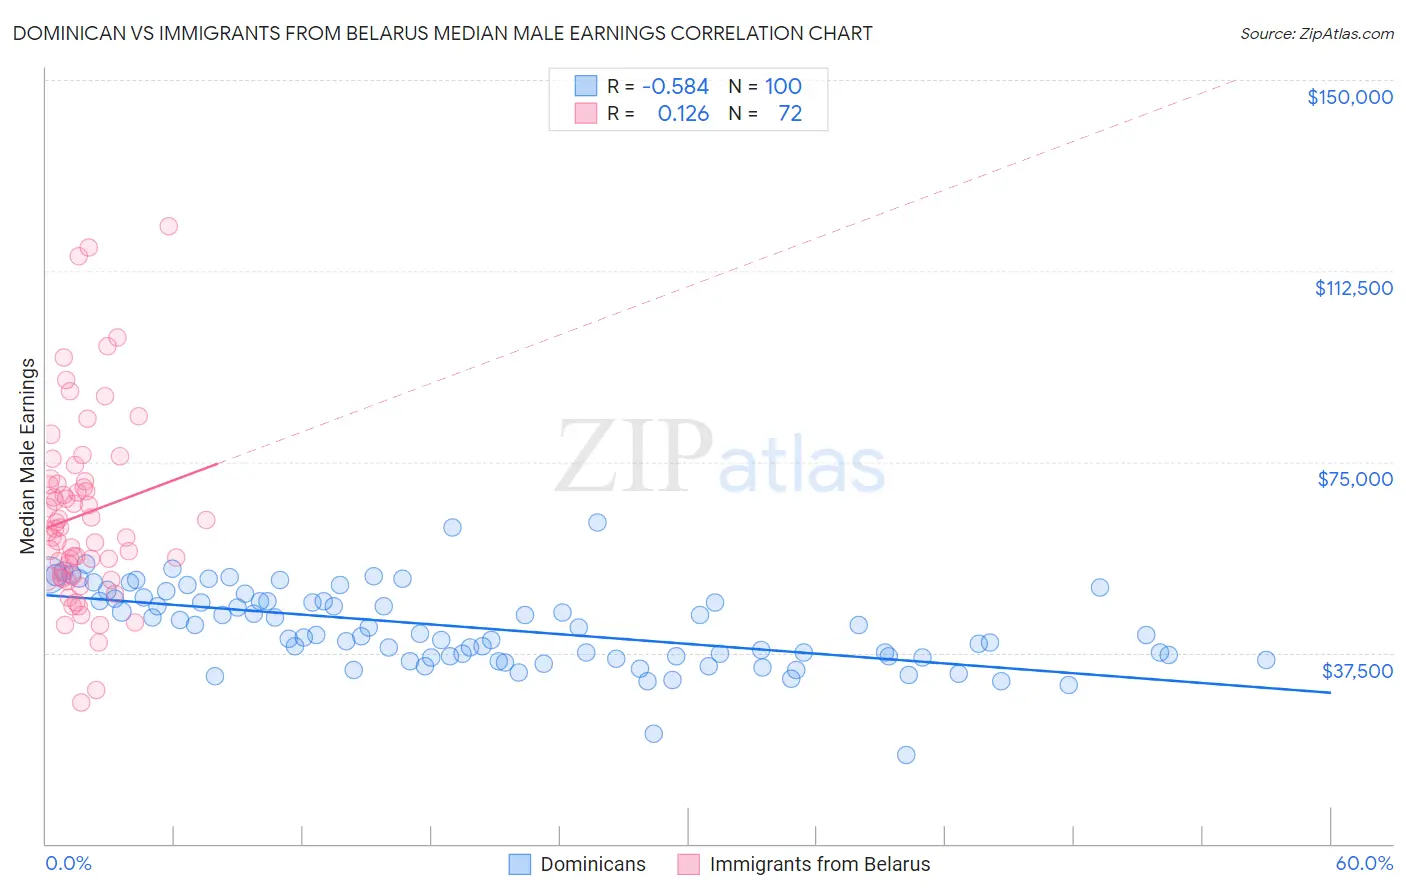 Dominican vs Immigrants from Belarus Median Male Earnings